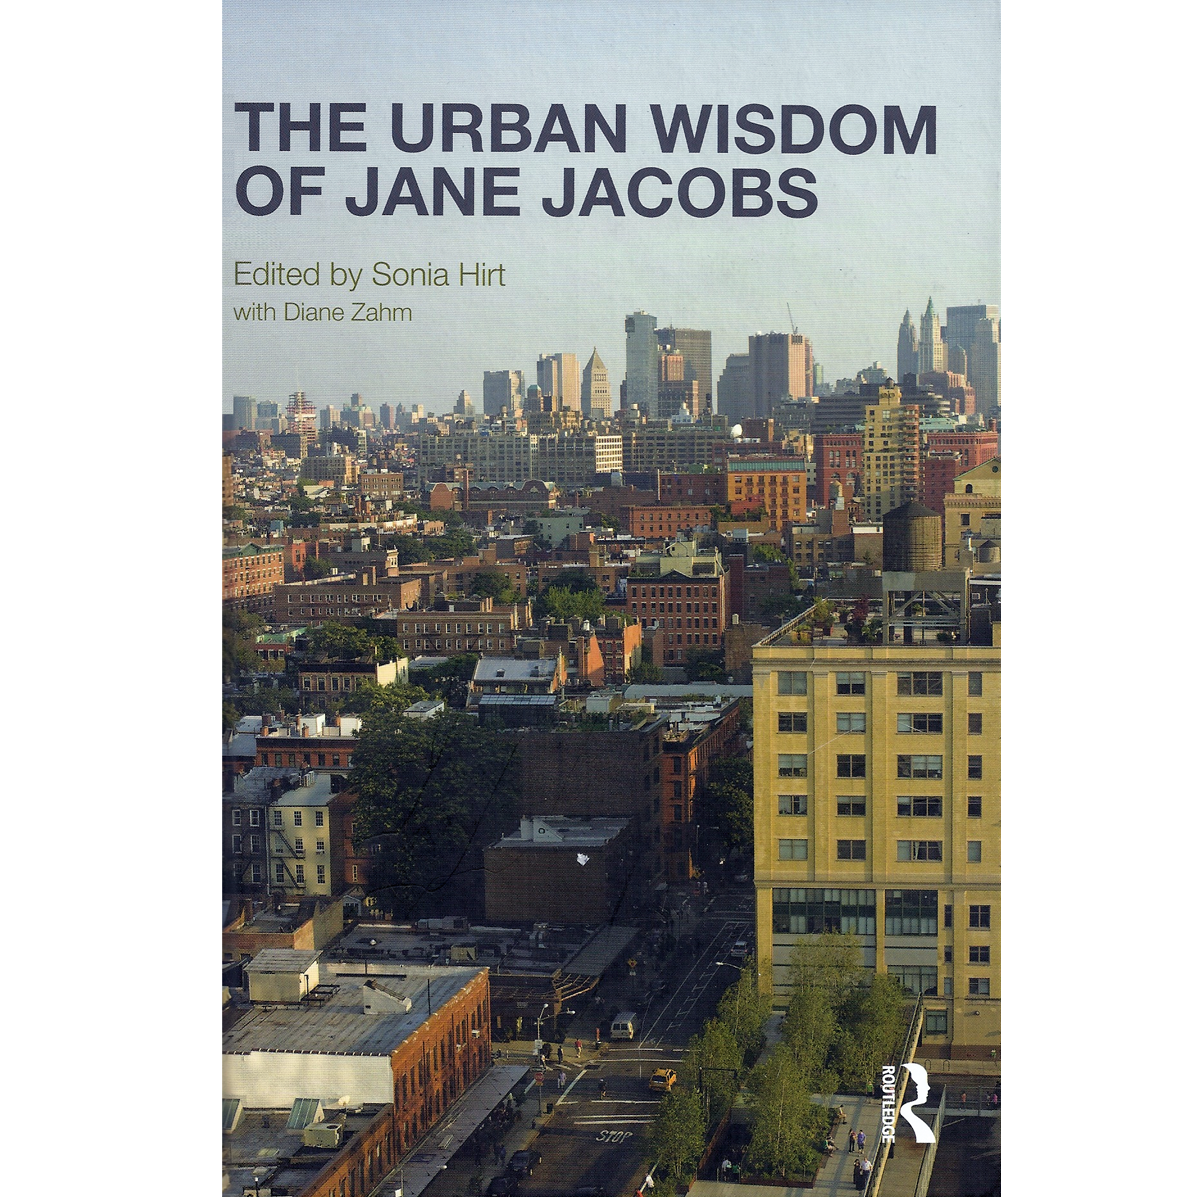 The Urban Wisdom of Jane Jacobs